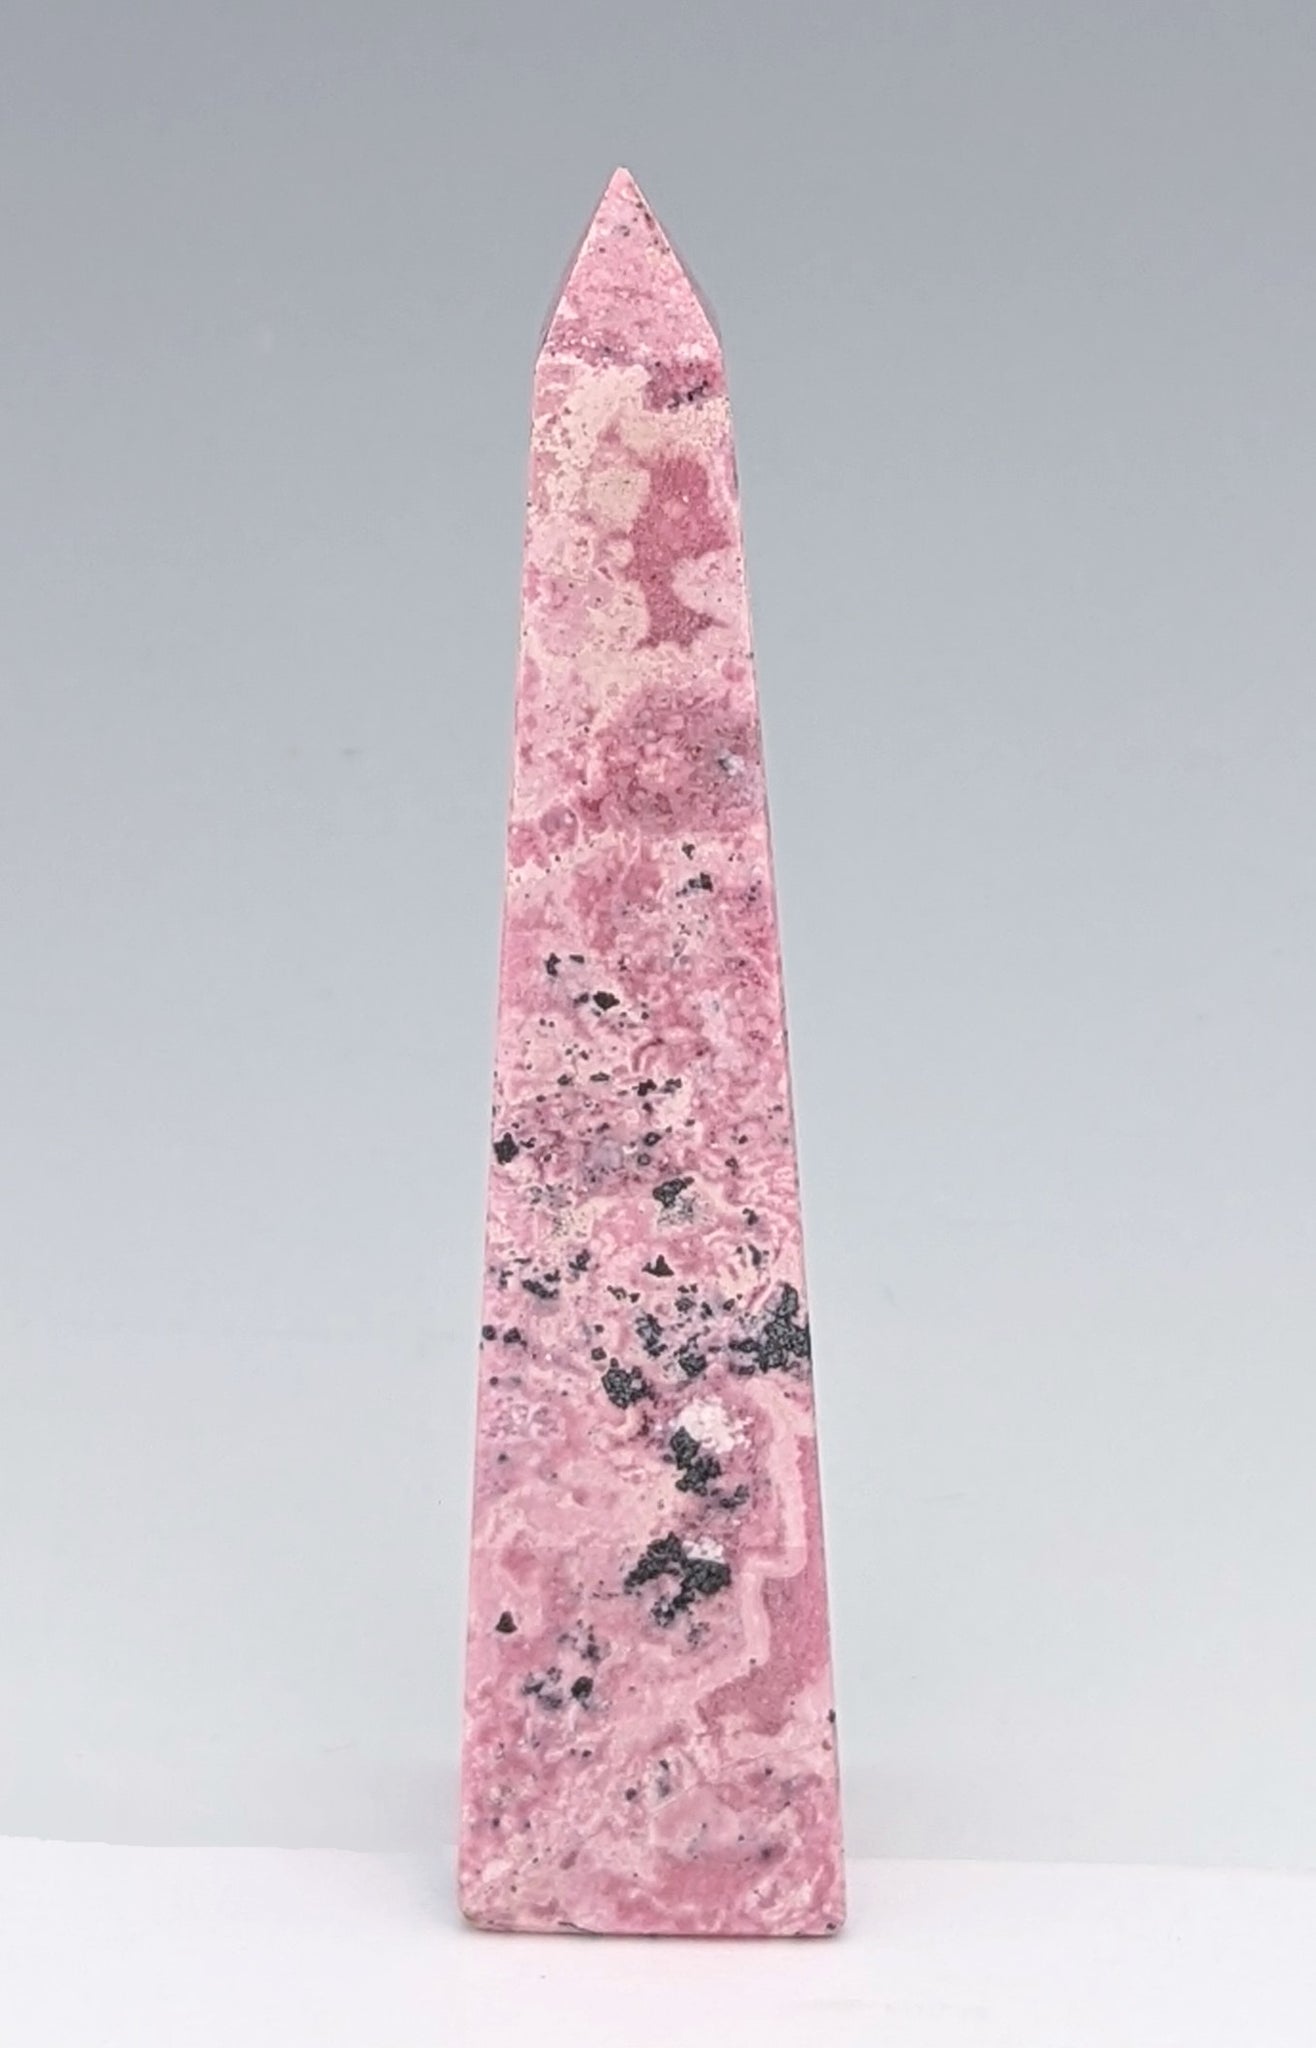 Pink Rhodochrosite Polished Tower Obelisk